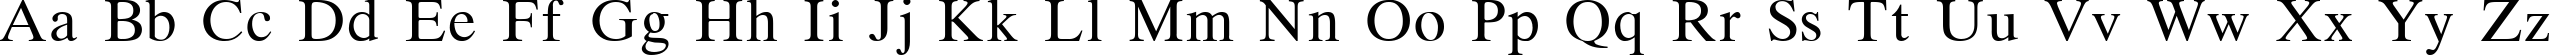 Пример написания английского алфавита шрифтом Dutch Normal